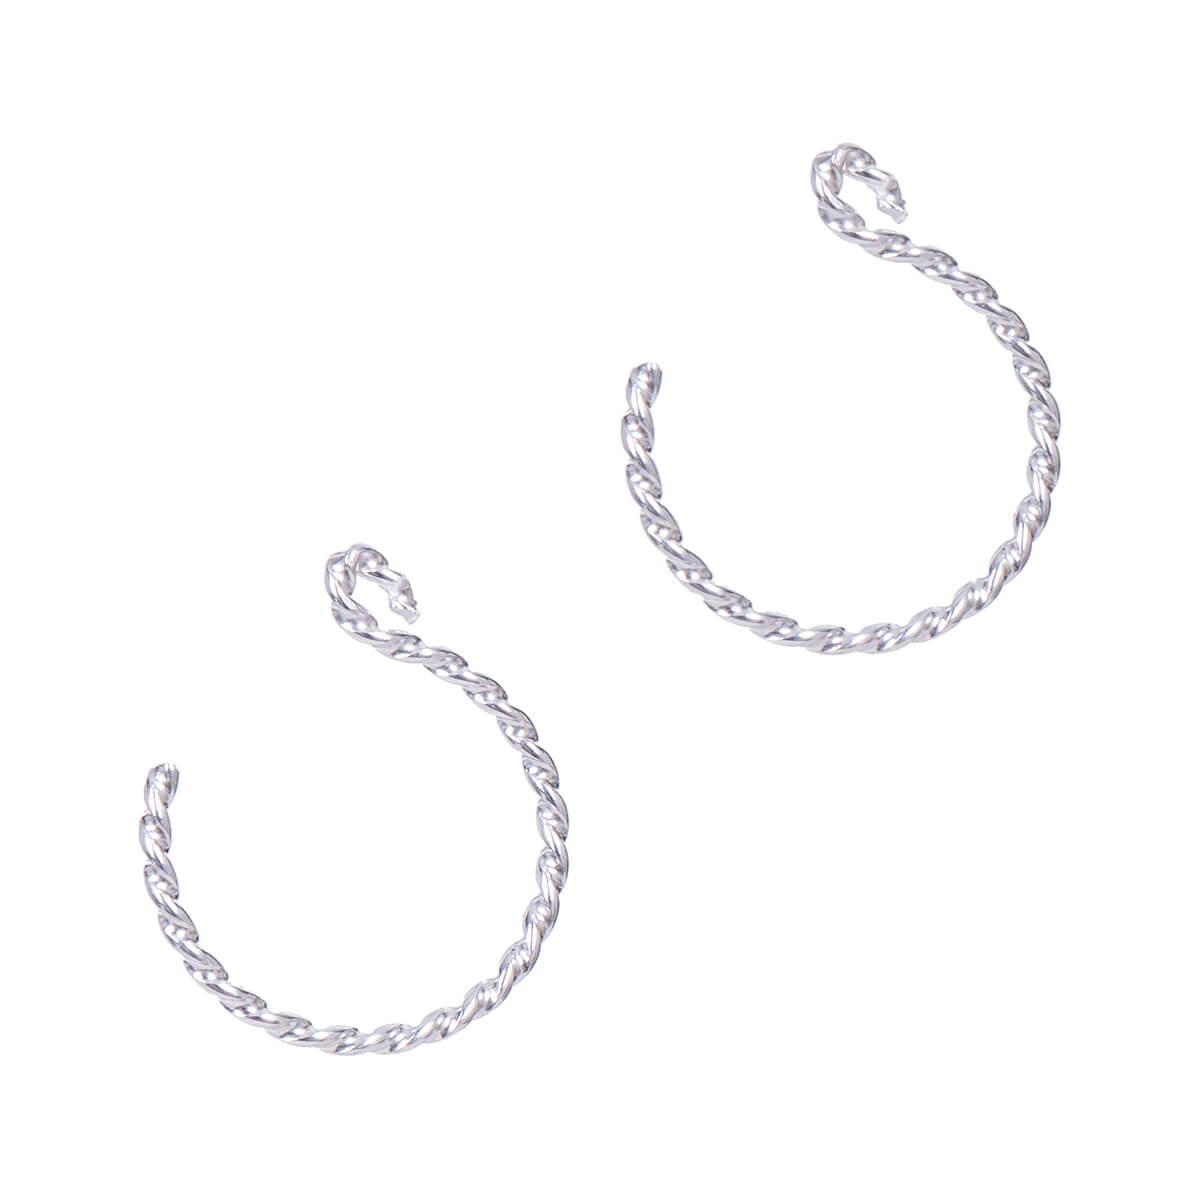  Backward Loop Twist Silver Earrings - Small